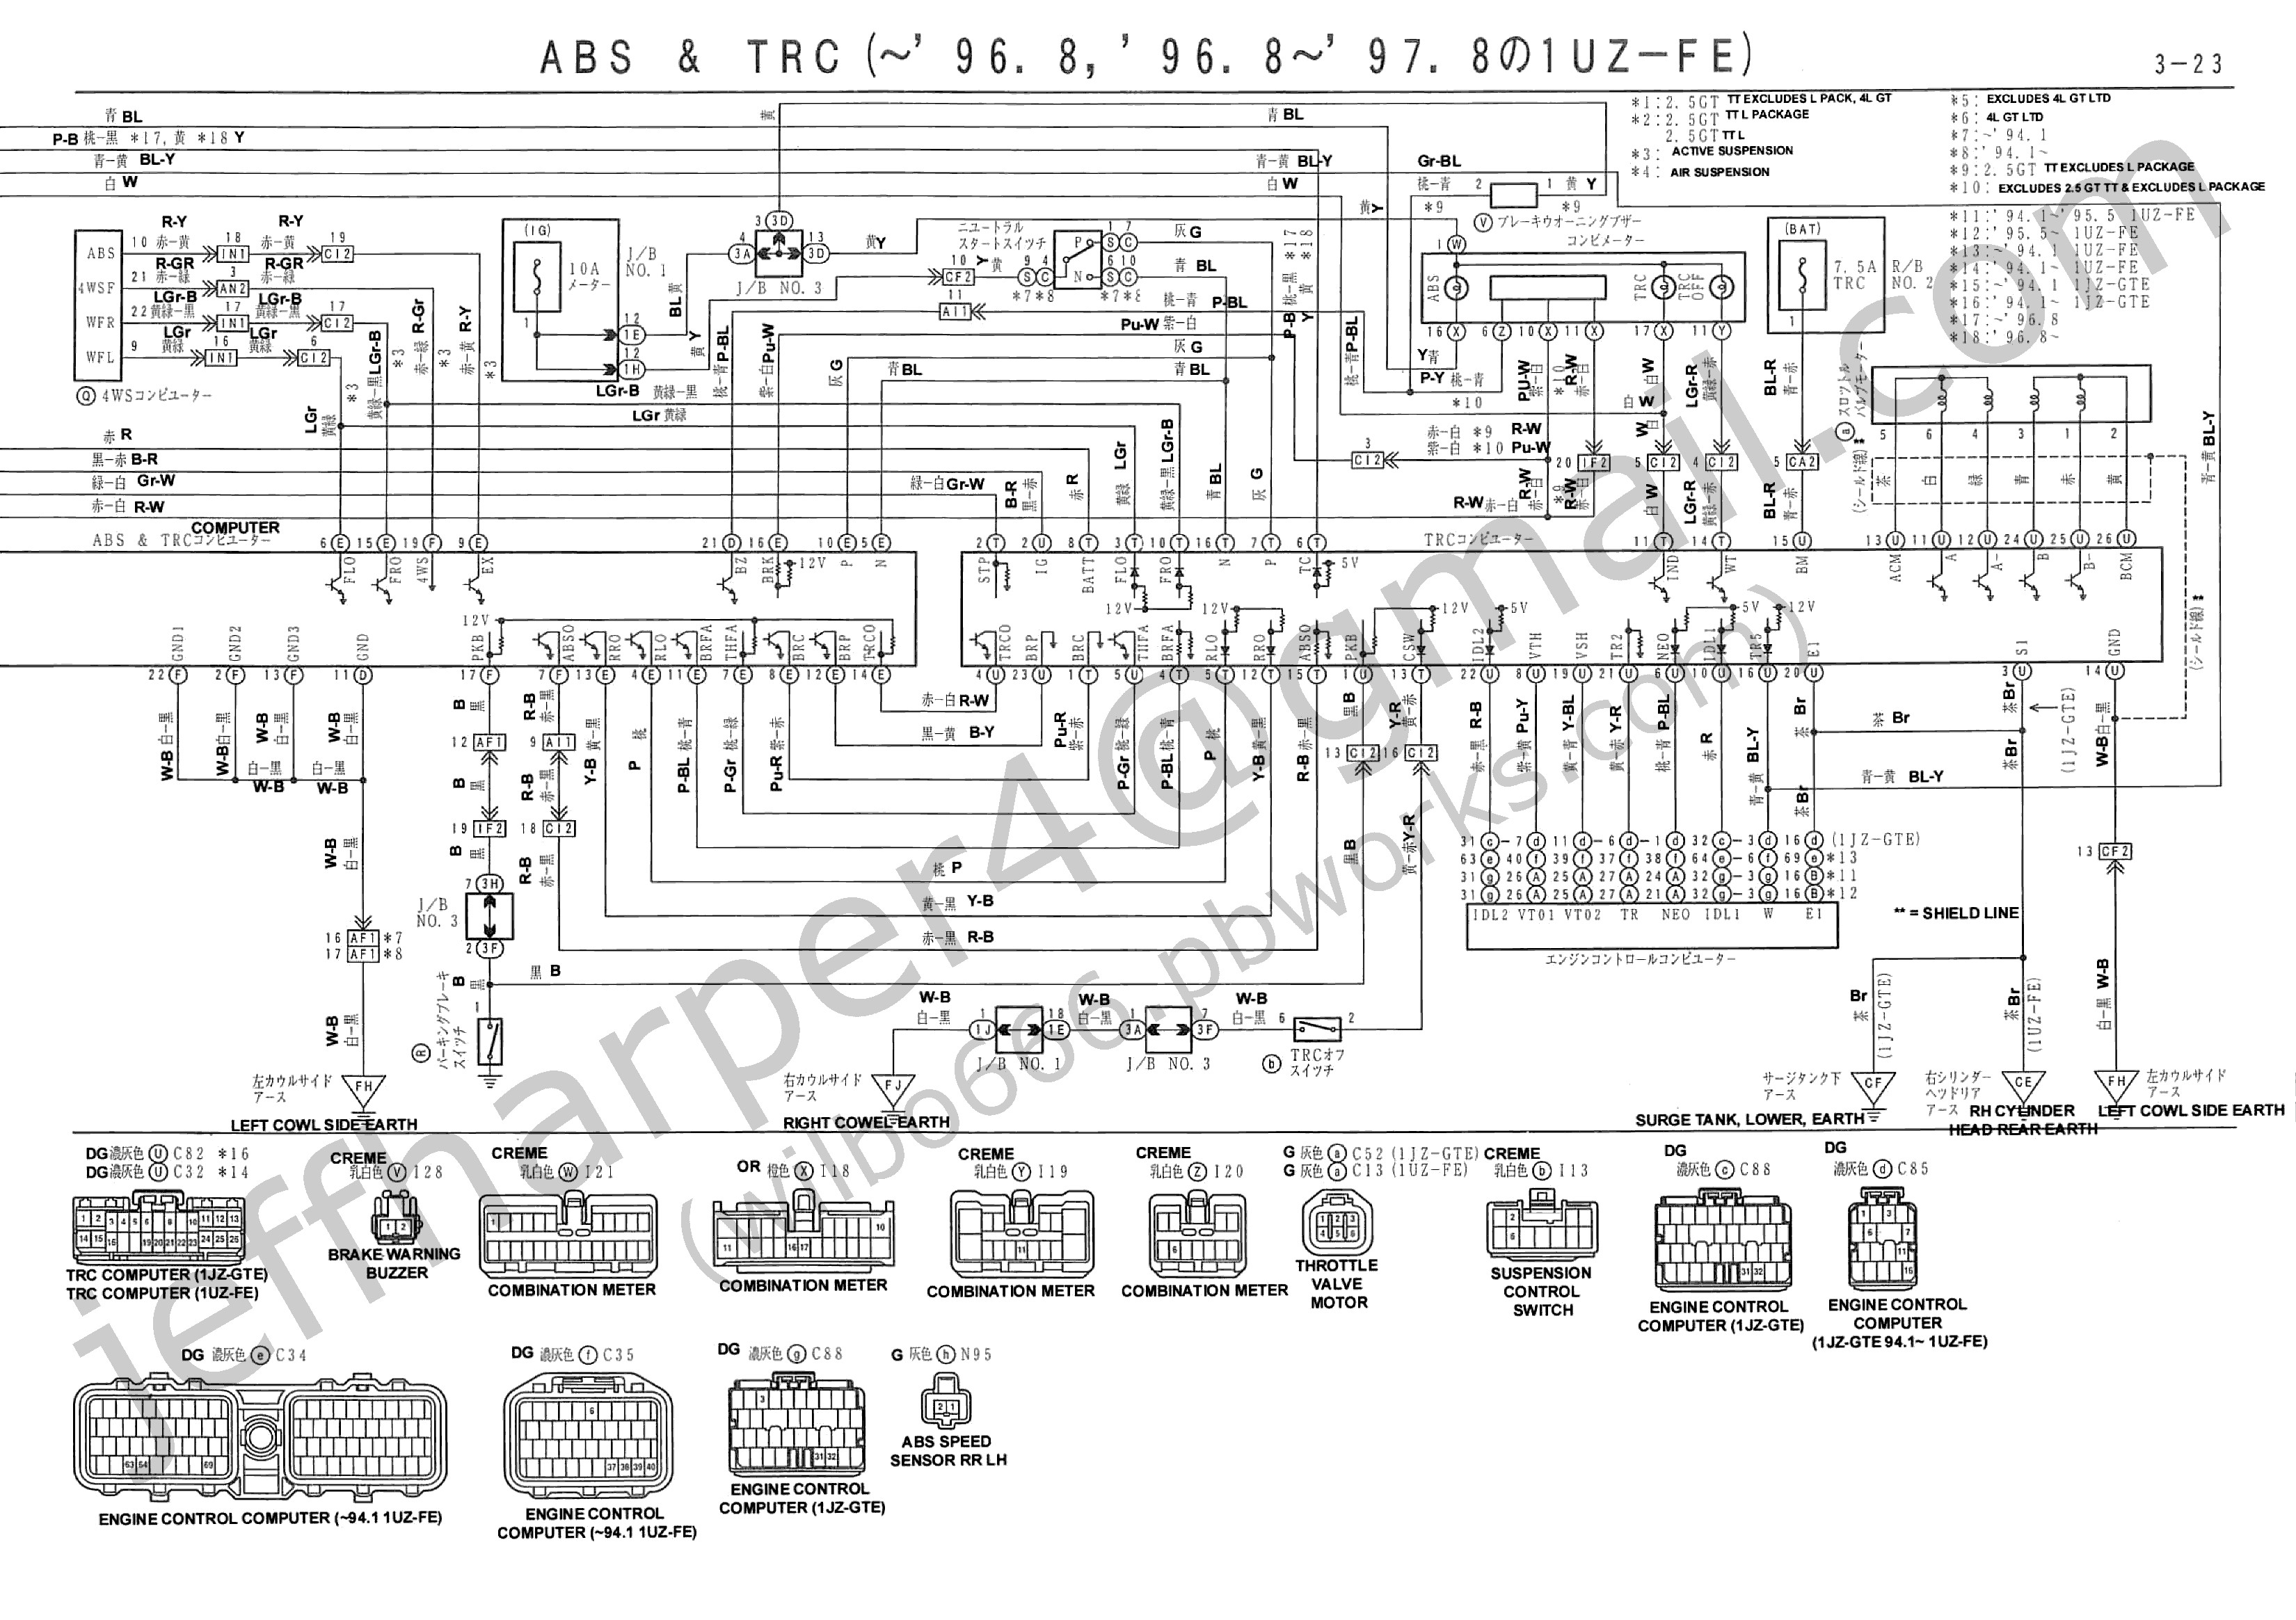 Schematic Diagram Of Diesel Engine Schematic Symbols Threads Free Image About Wiring Diagram and Of Schematic Diagram Of Diesel Engine